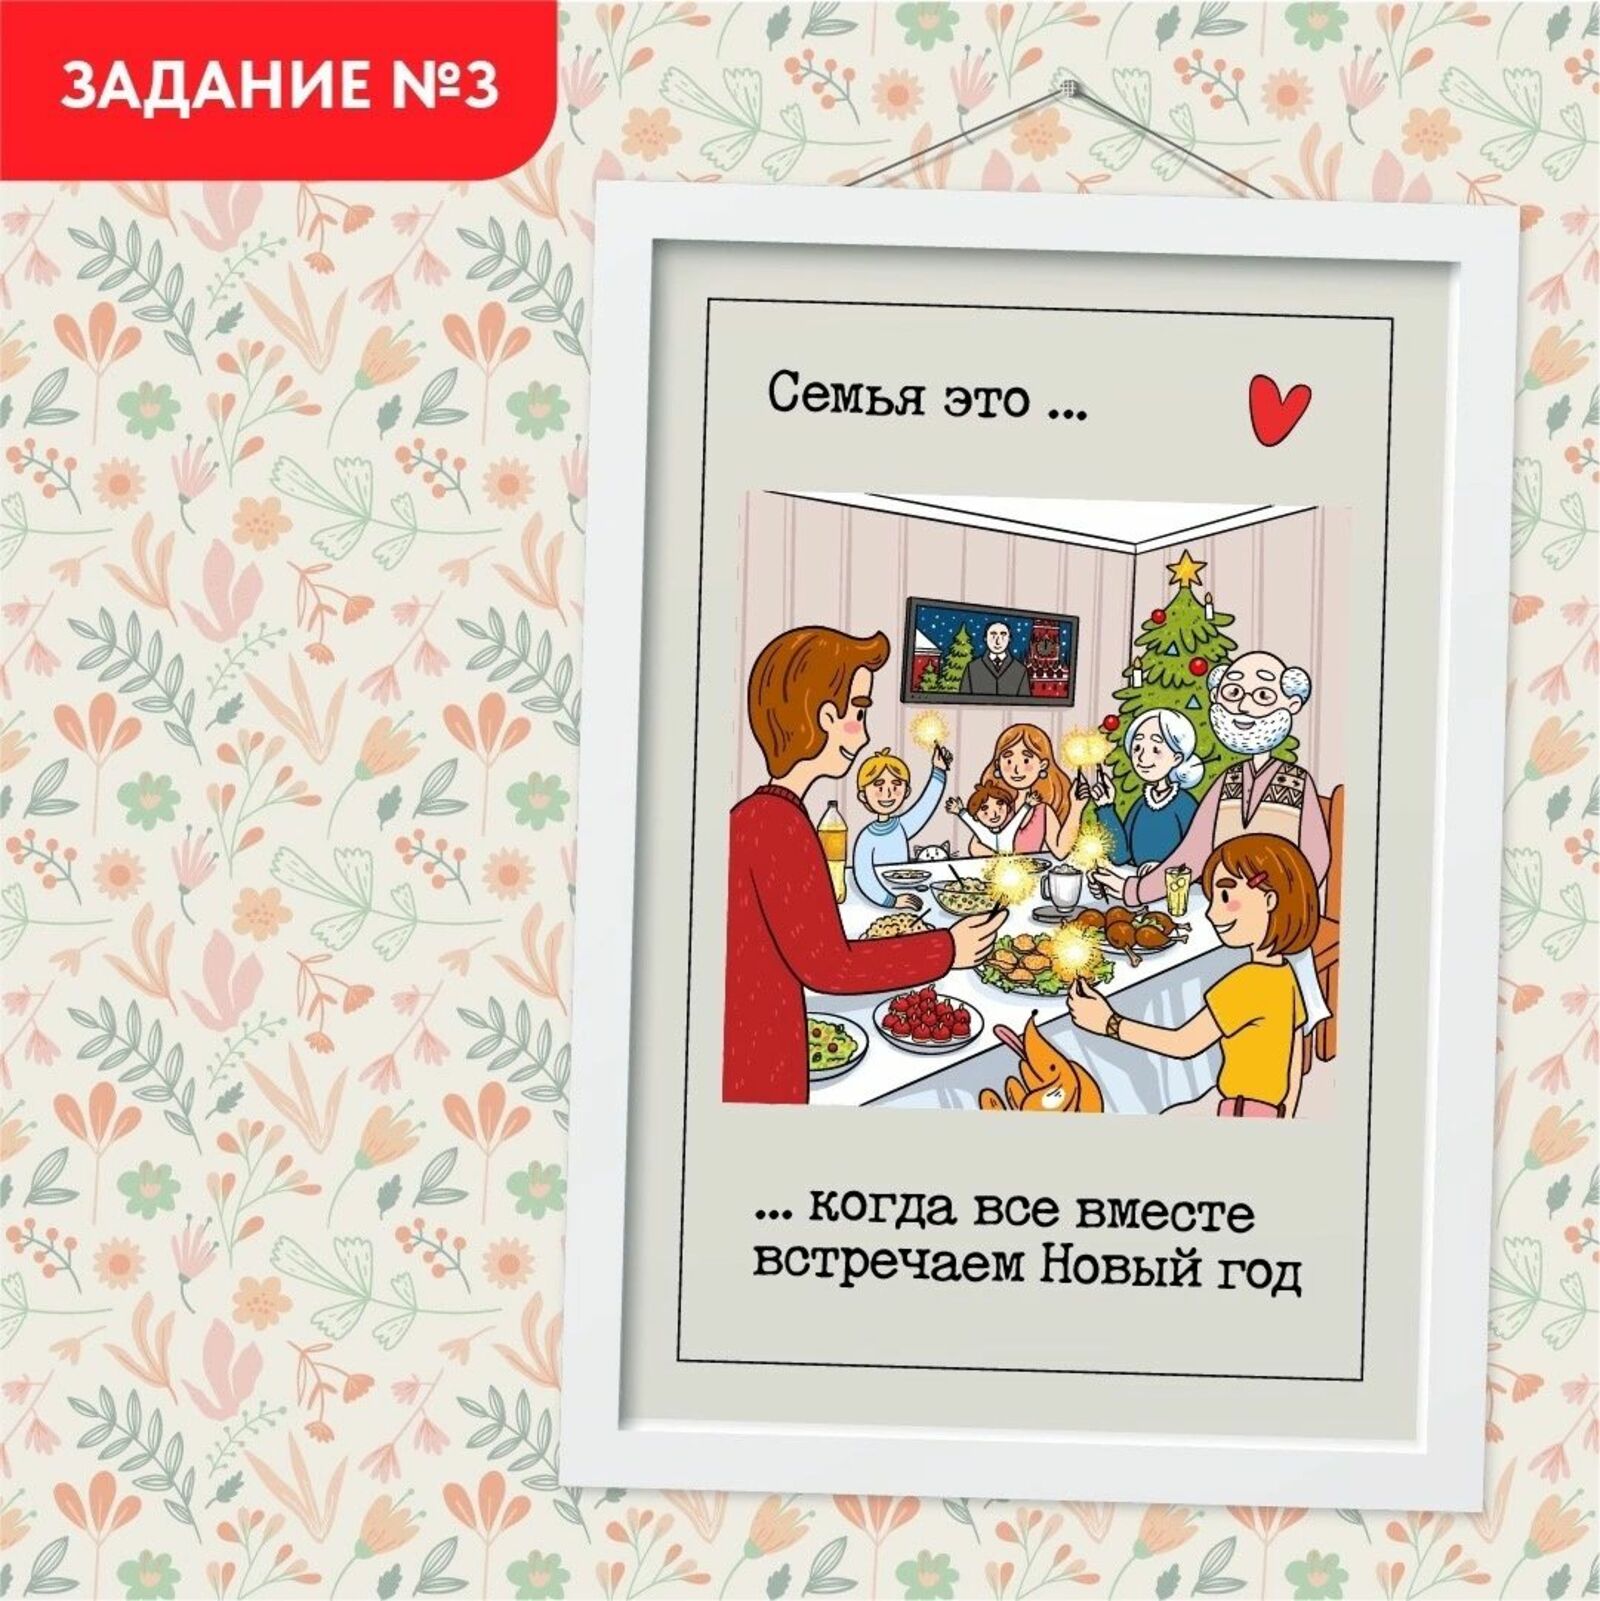 Как семьи Башкирии встретили Новый год?